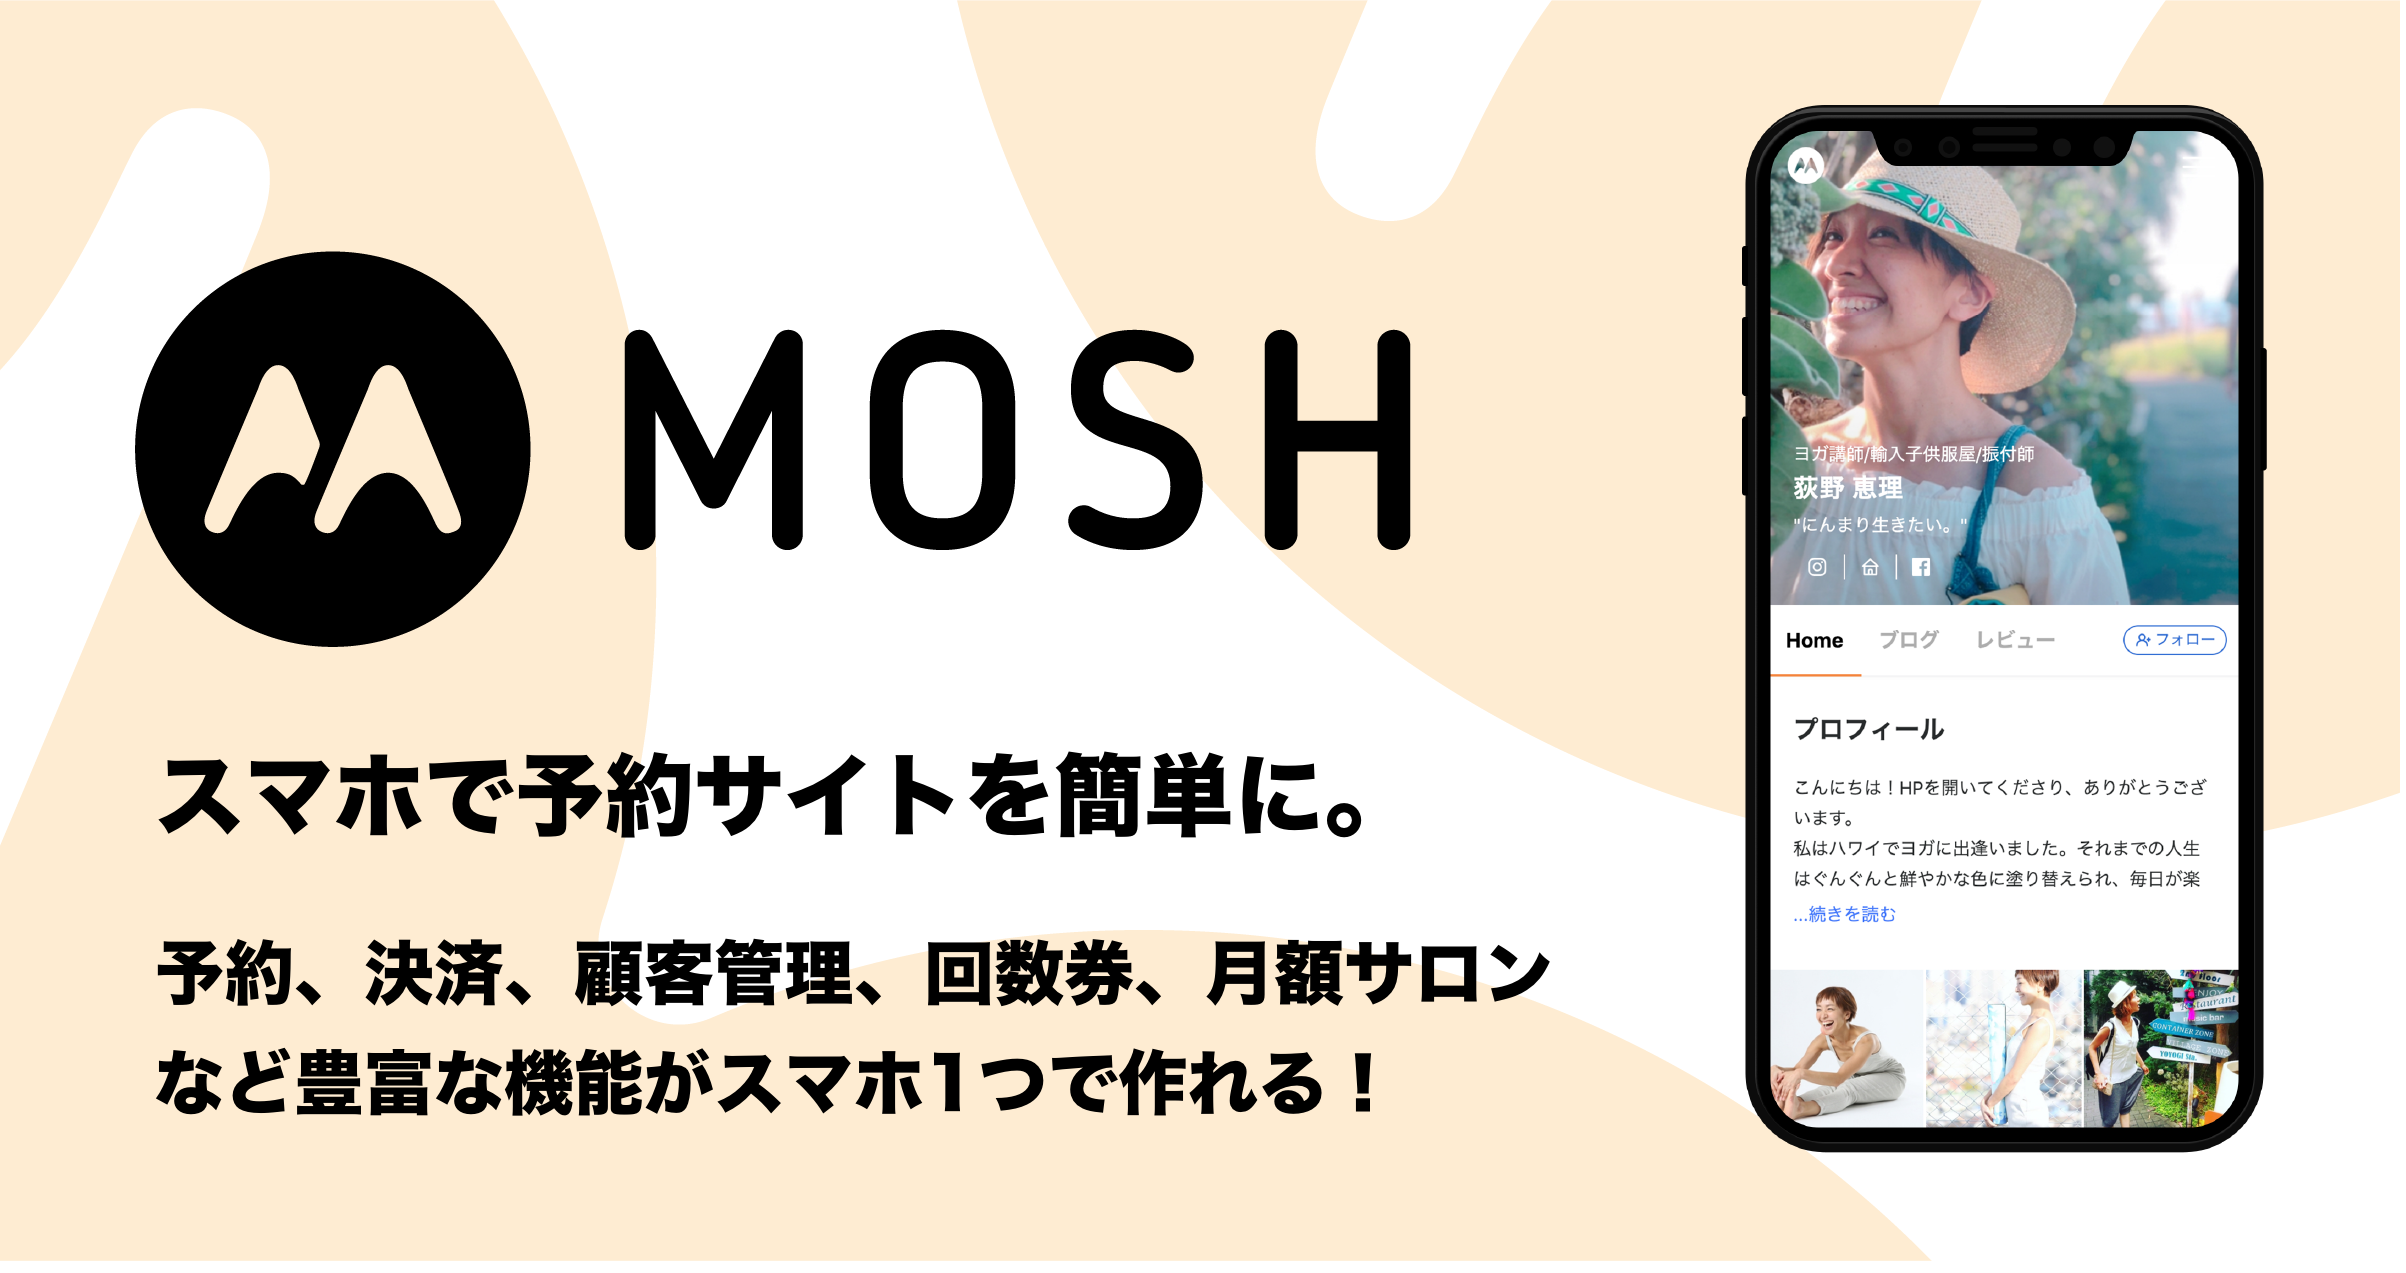 【サロン向け】MOSHの予約システム利用料金についてご紹介 | MOSH Magazine